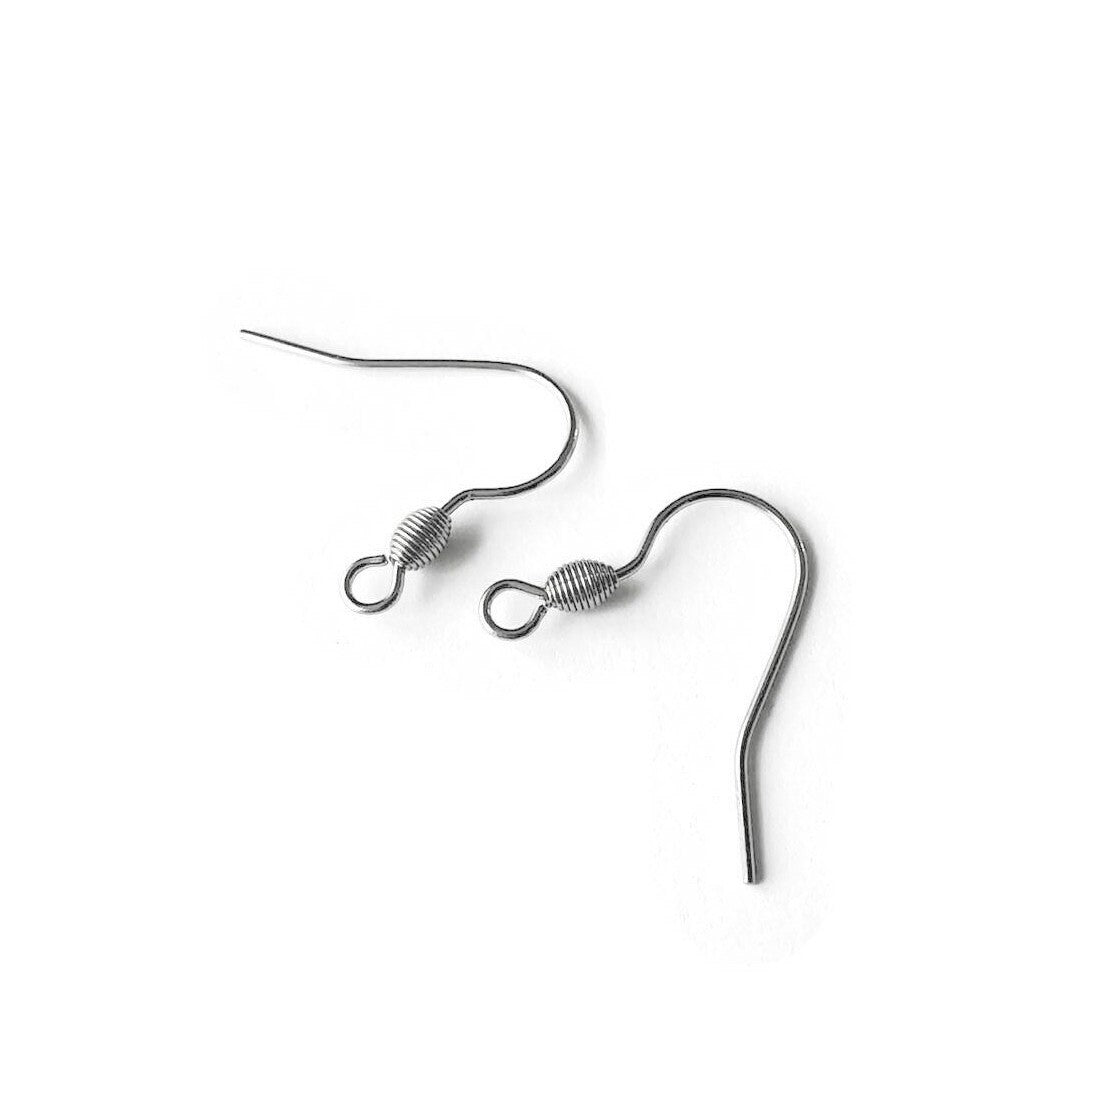 100 PIECE PACK 21mm 304 Stainless Steel Earring Hooks, Fishhook Earrings,  .6mm Pin, 2mm Hole, Silver Color, Earring Making, Basic Ear Hook